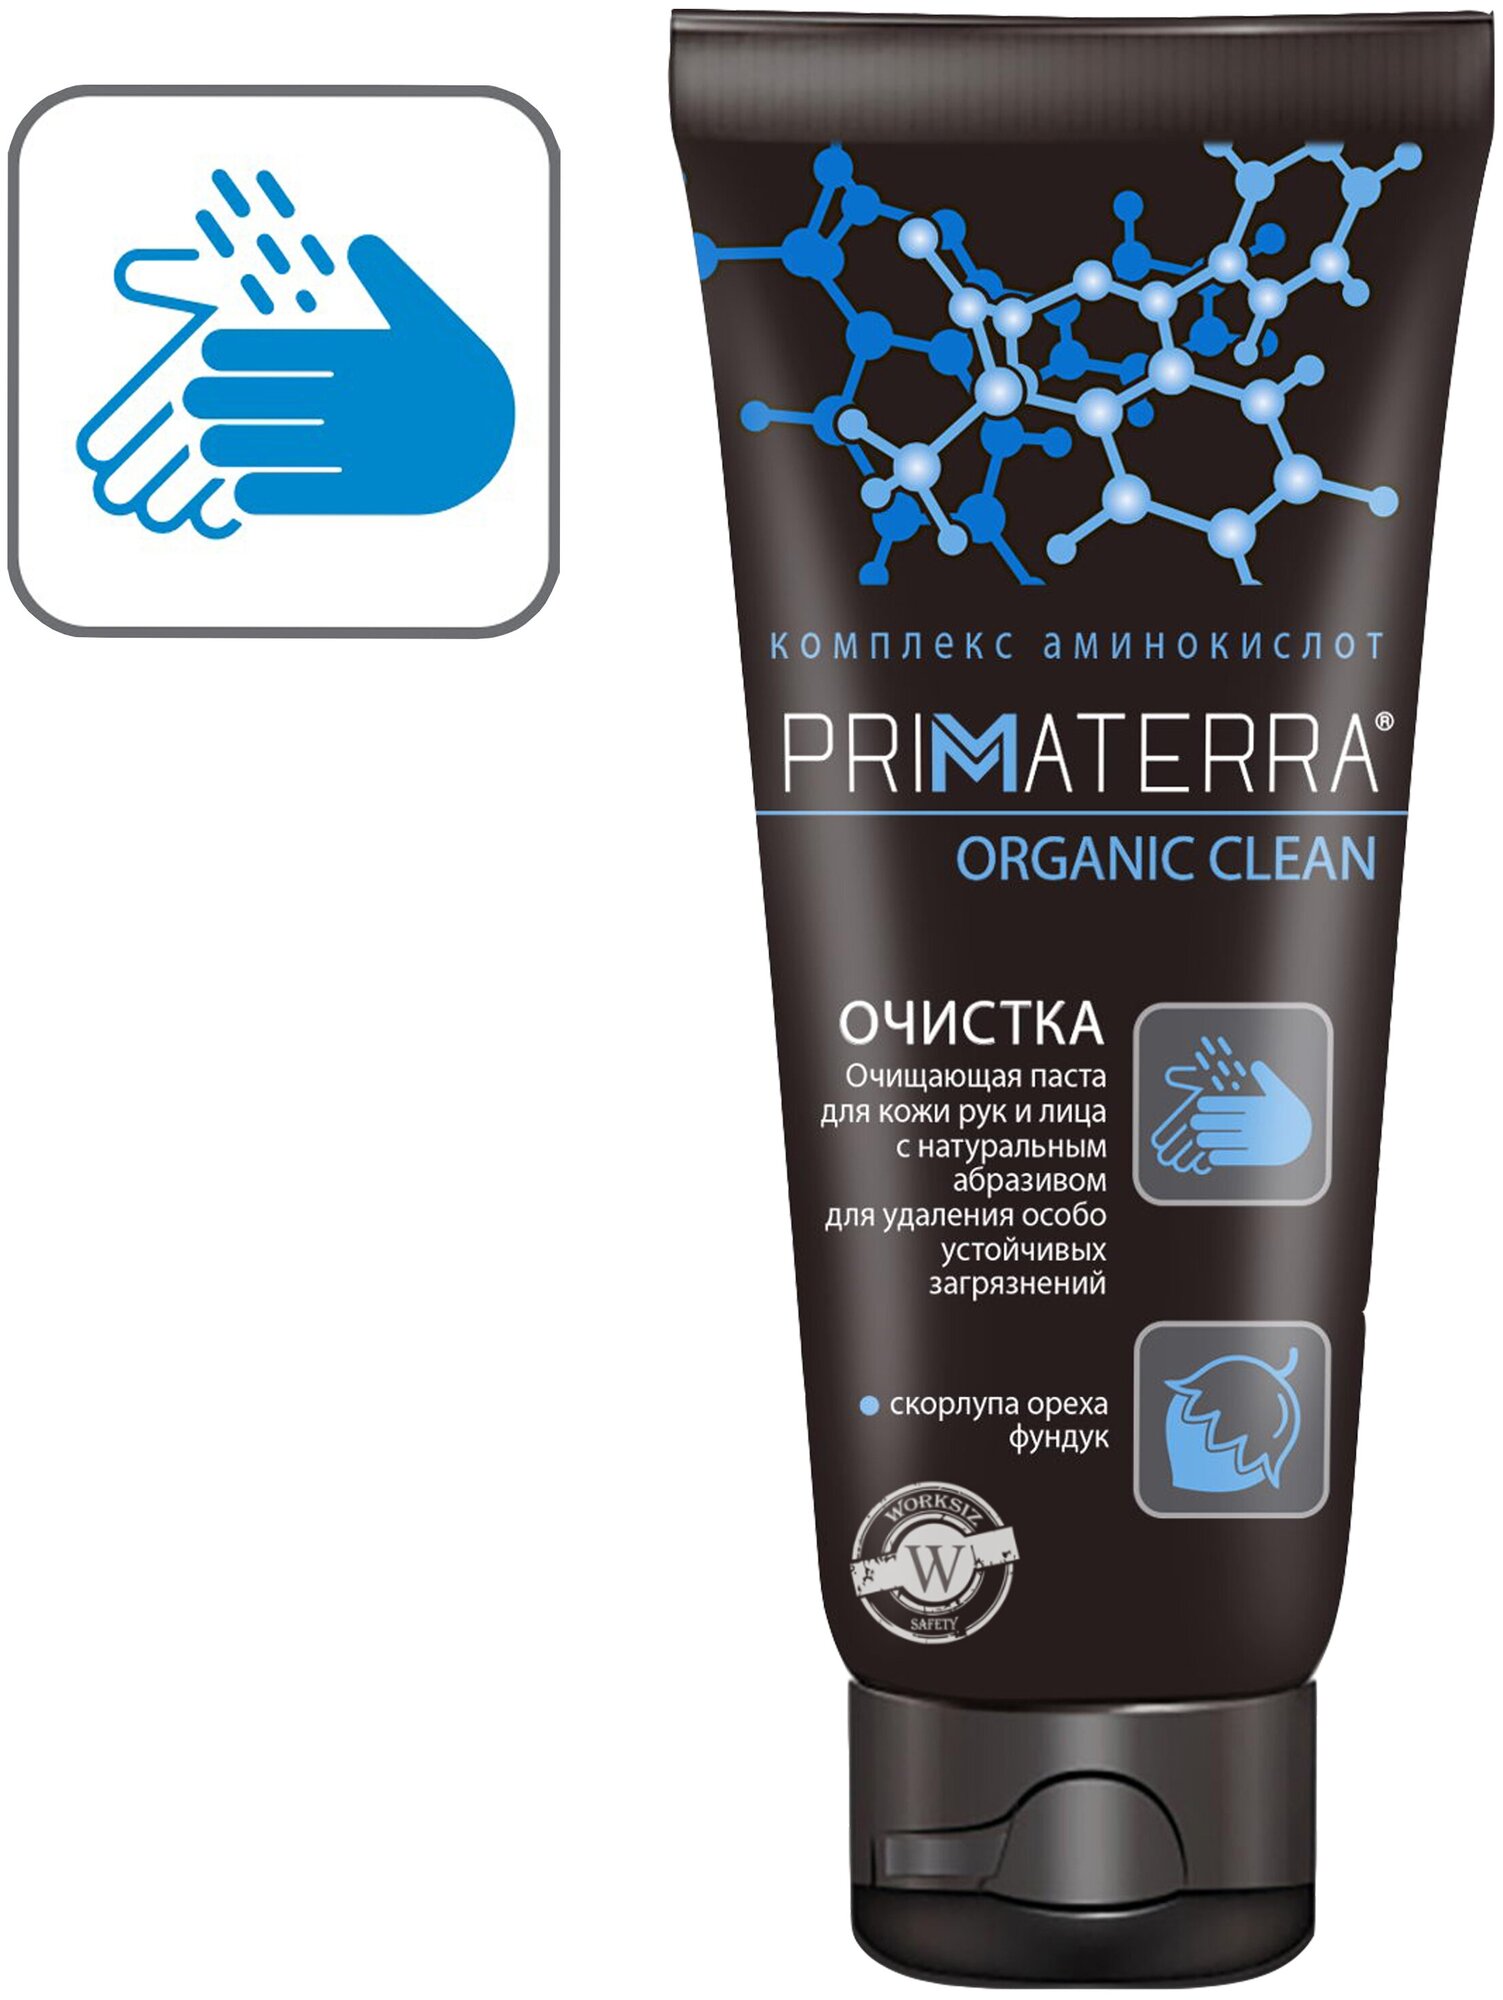 Паста c абразивом PRIMATERRA ORGANIC CLEAN для очистки кожи от особо устойчивых загрязнений